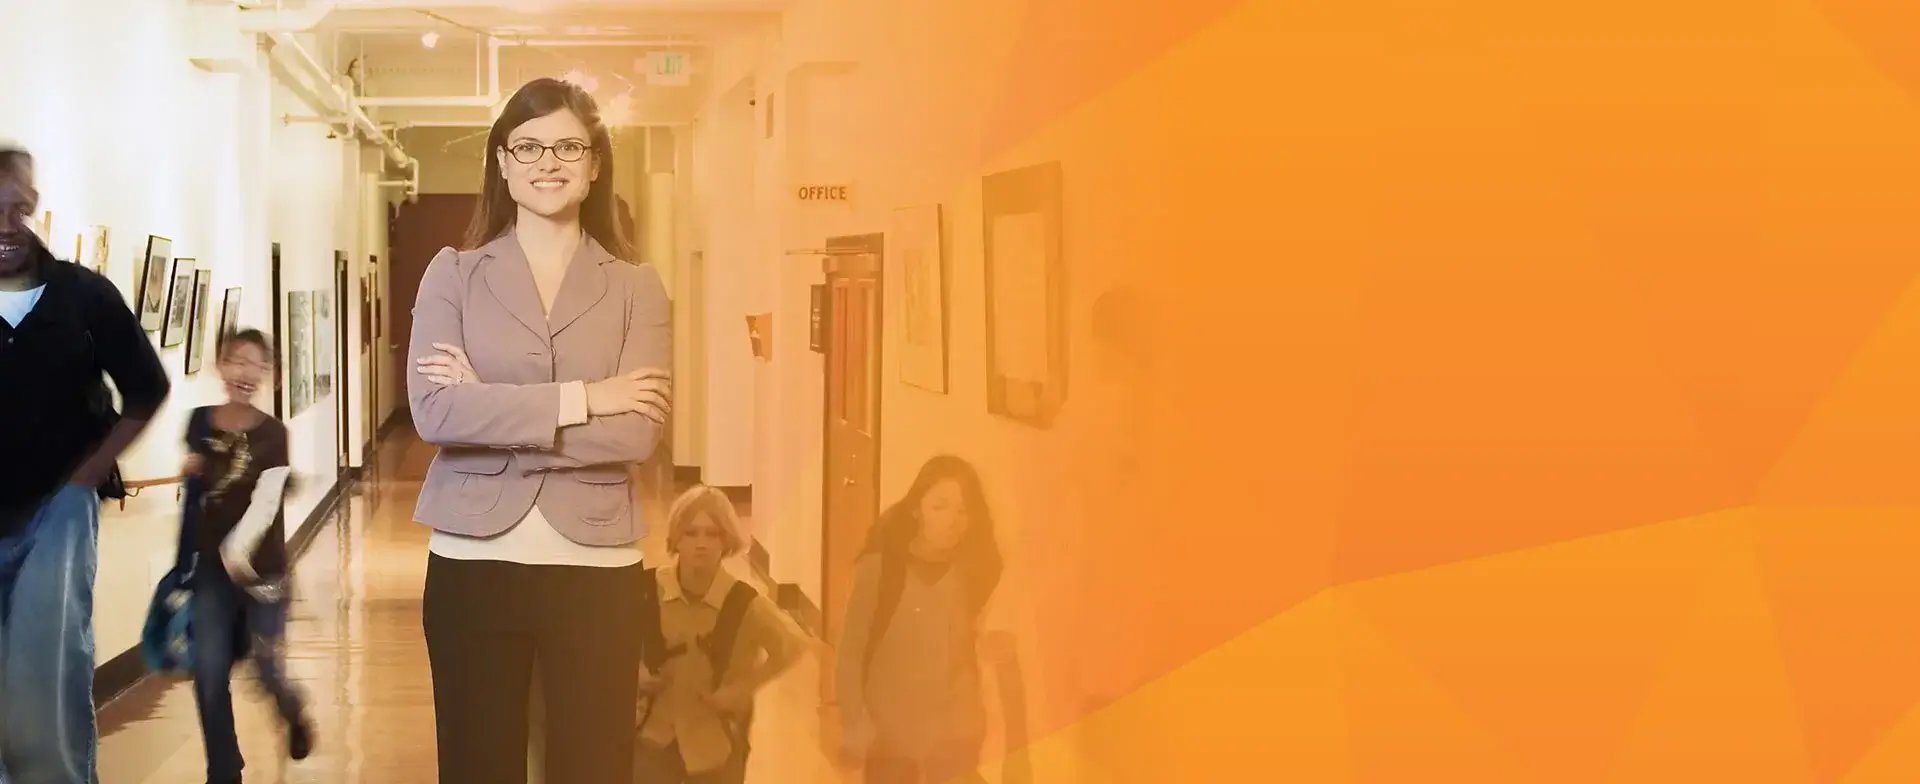 teacher standing in a school hallway